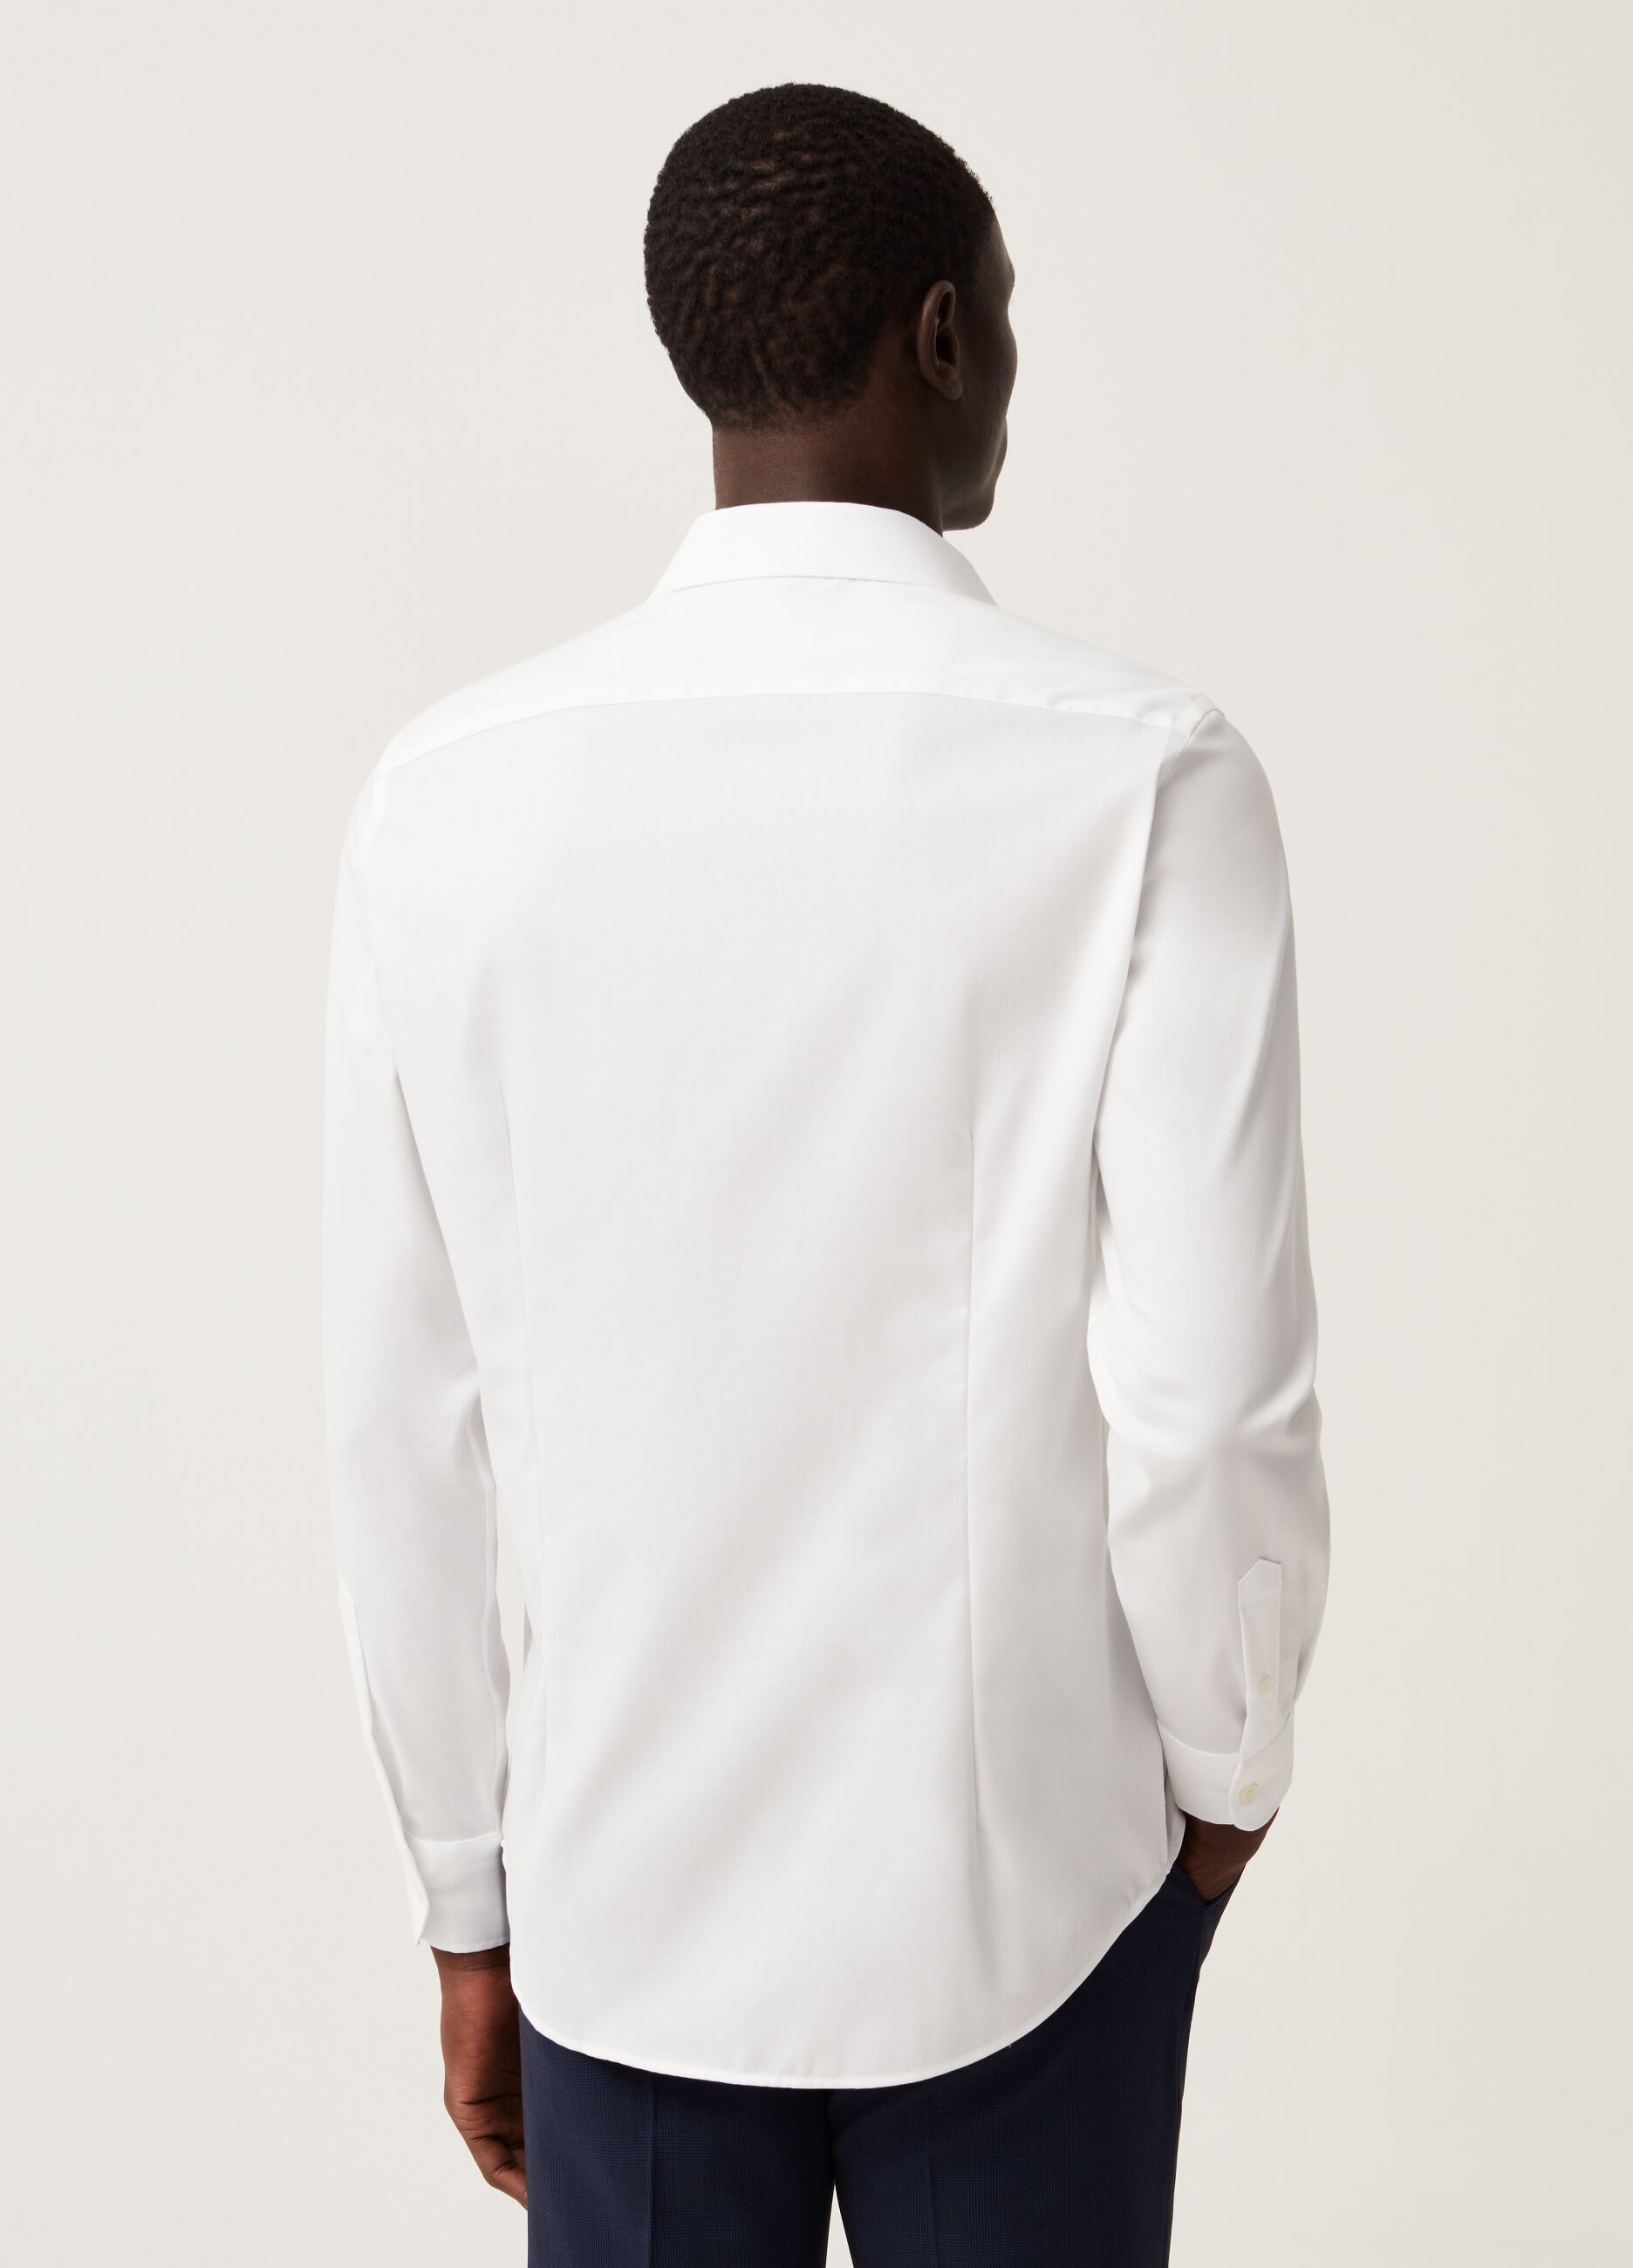 Camisa slim fit de algodón sin plancha en color liso.